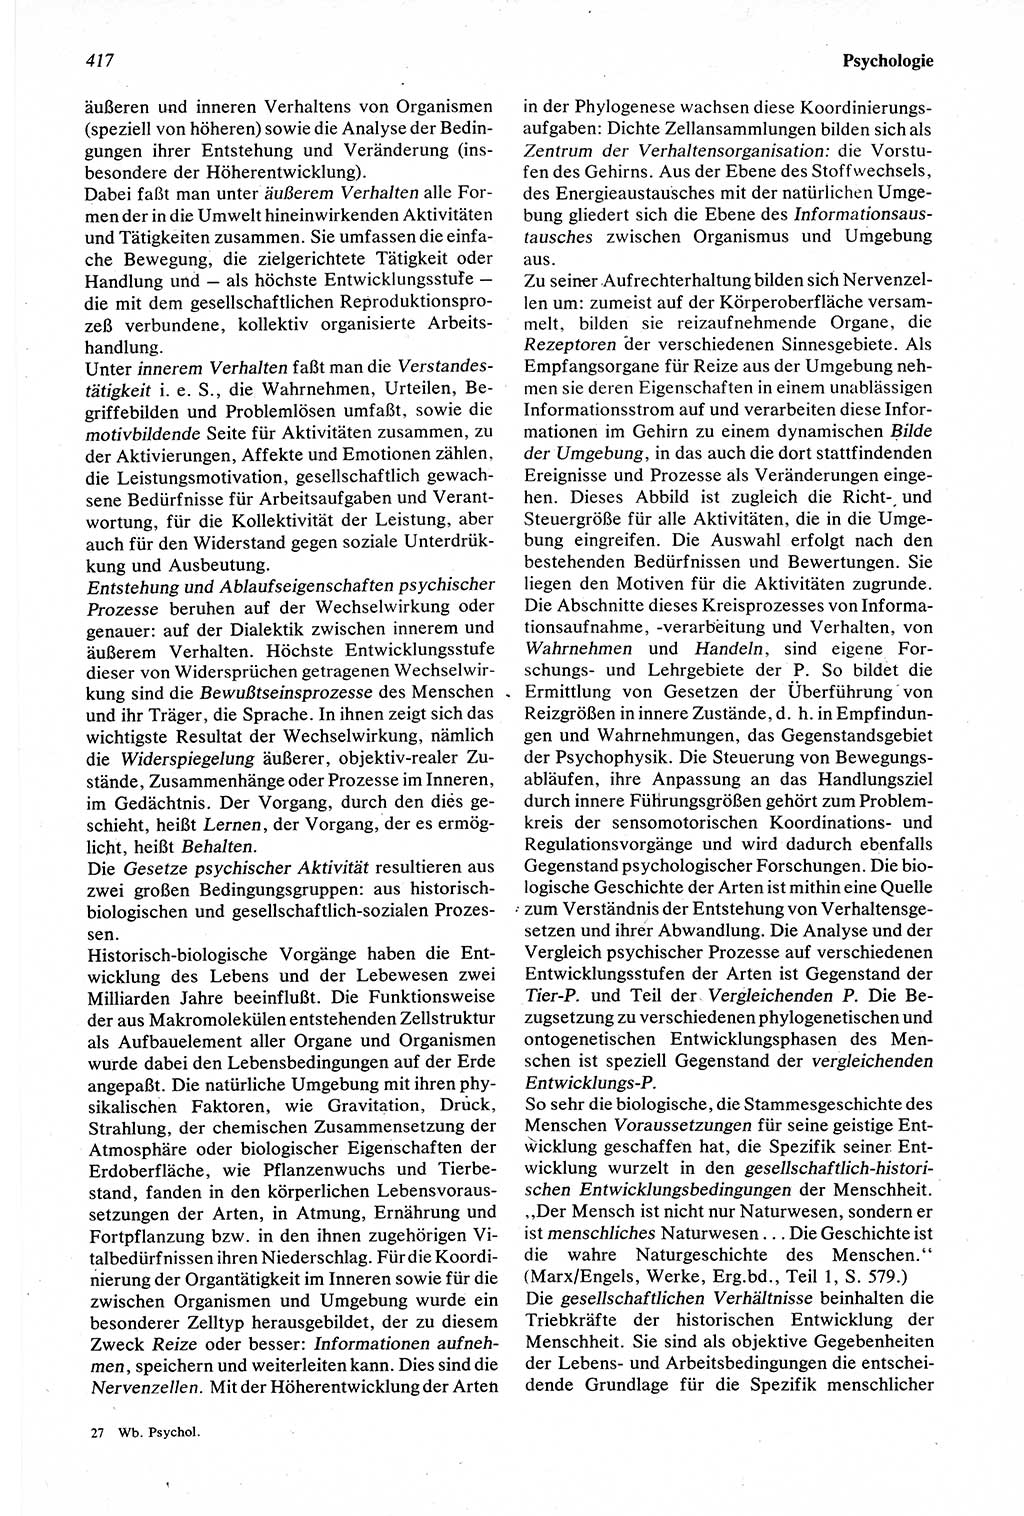 Wörterbuch der Psychologie [Deutsche Demokratische Republik (DDR)] 1976, Seite 417 (Wb. Psych. DDR 1976, S. 417)